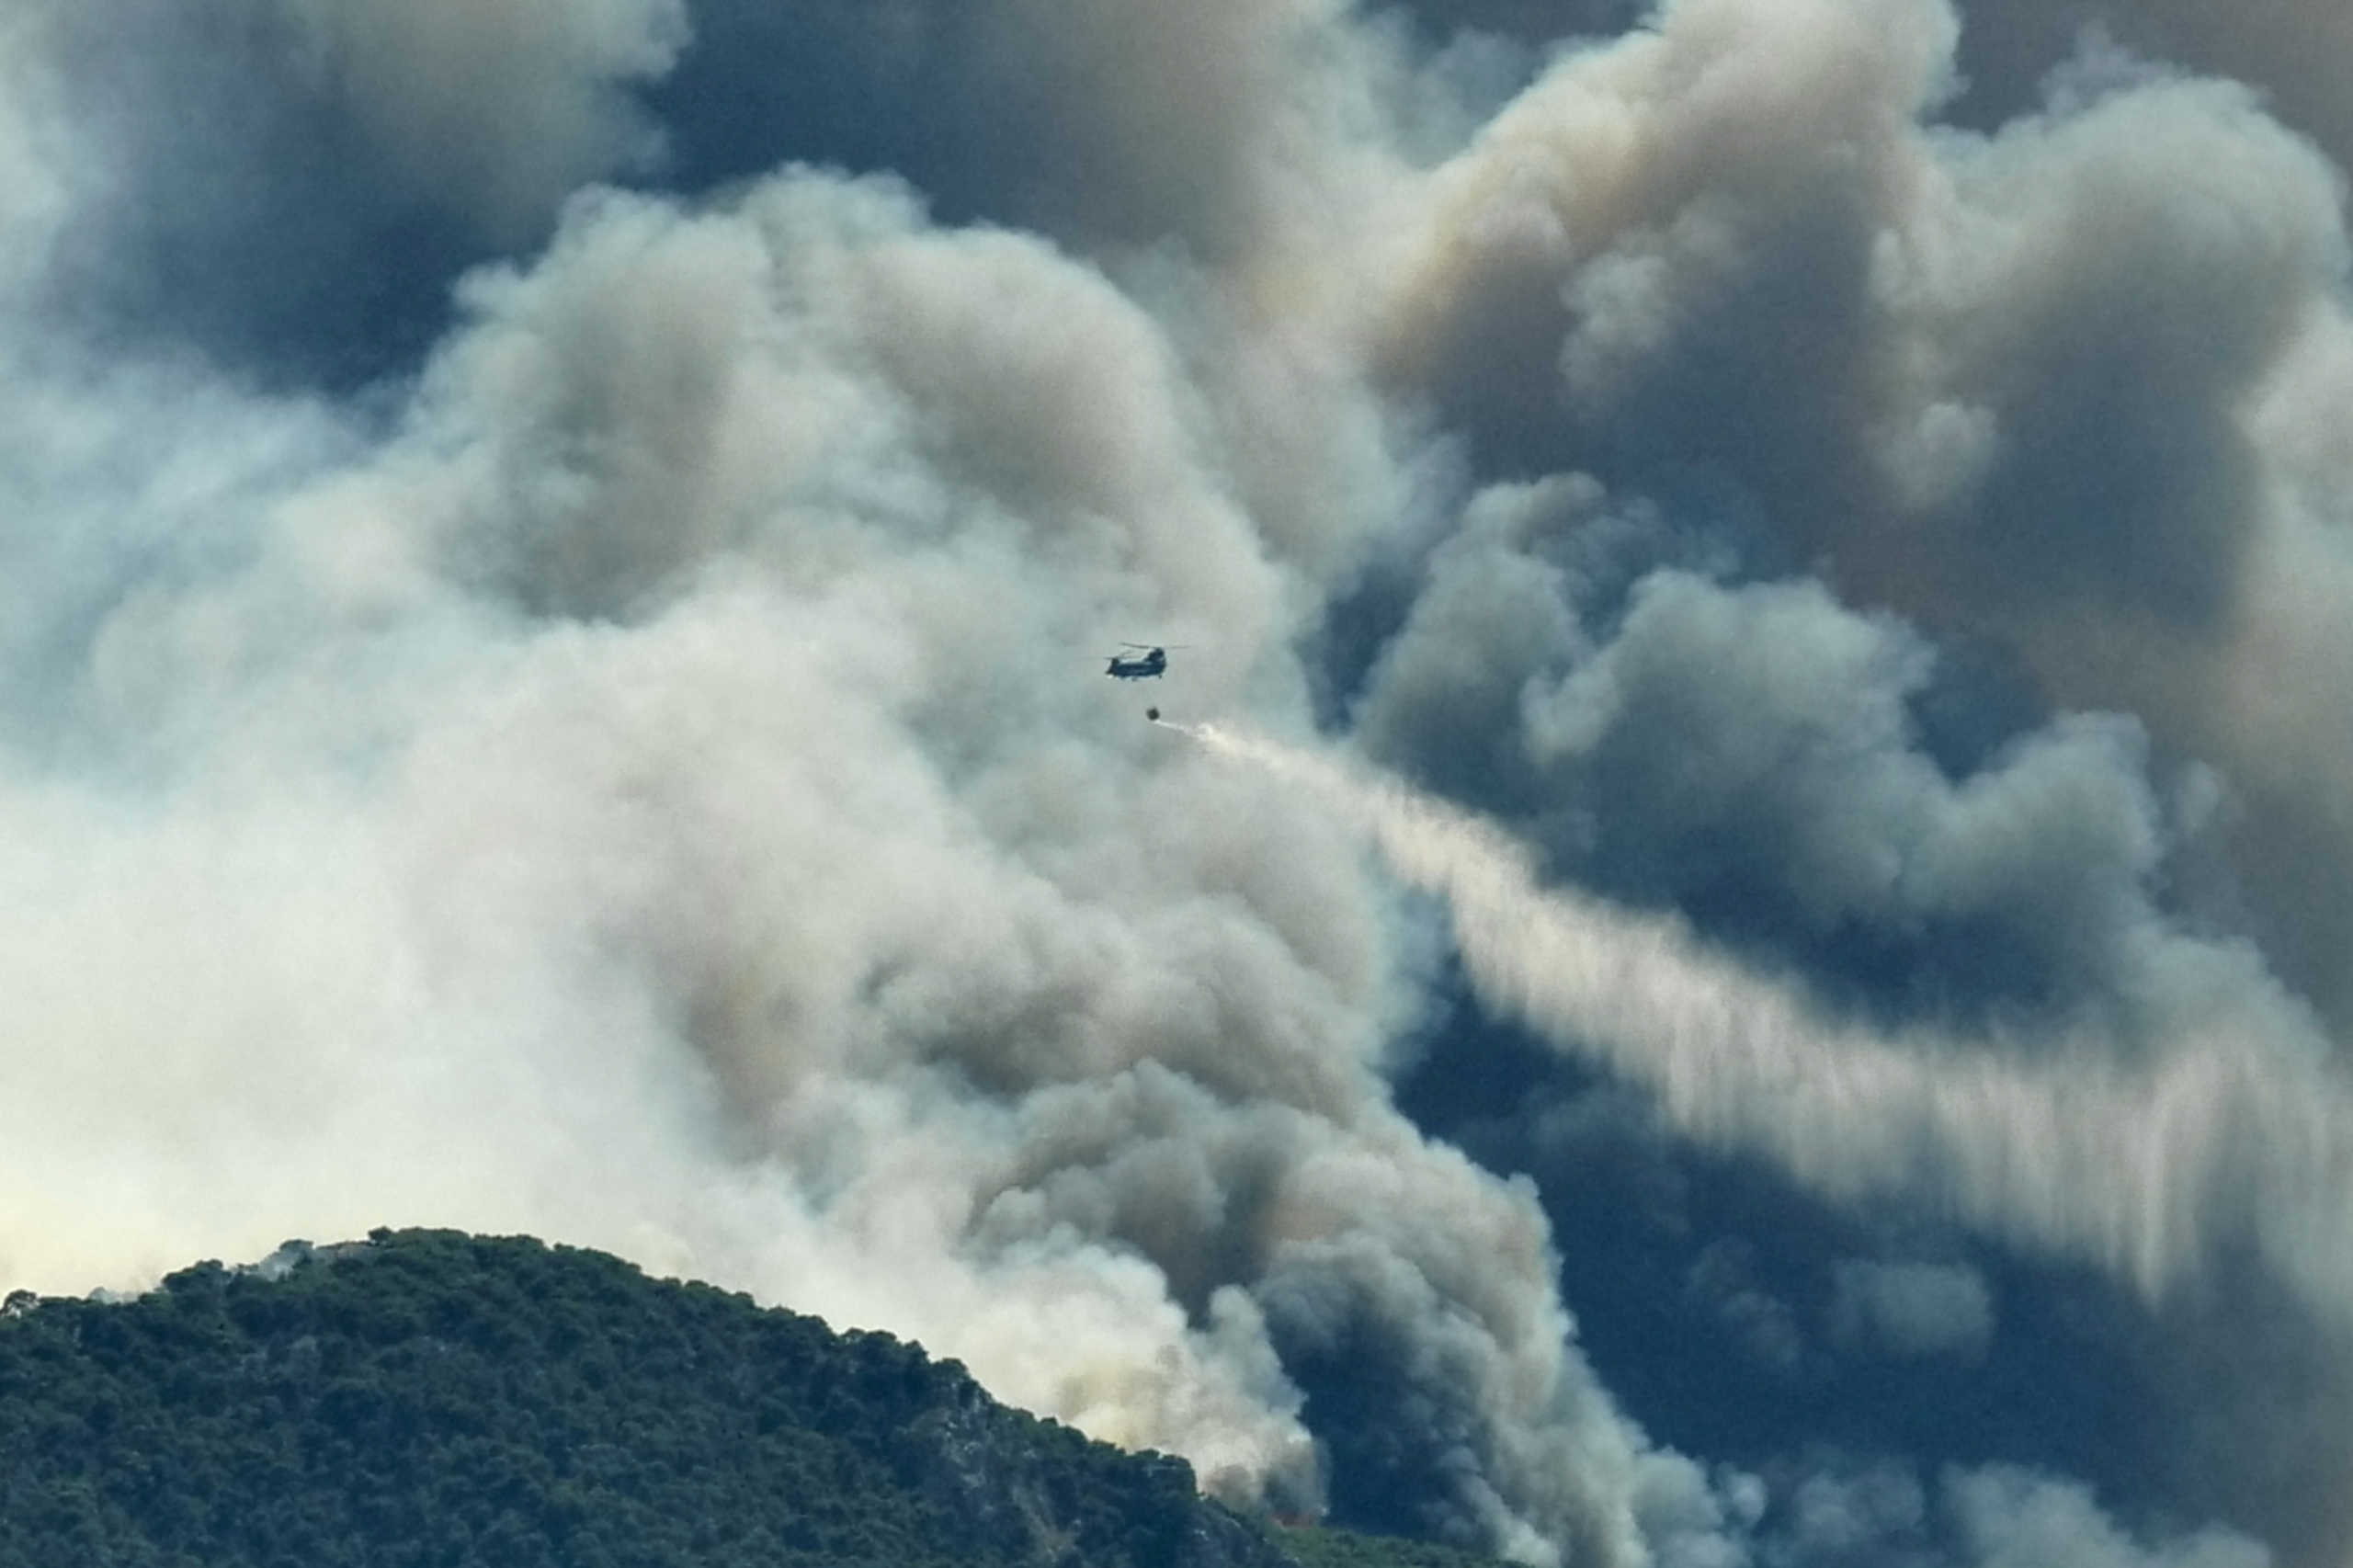 Κορινθία: Μαίνεται η φωτιά στις Κεχριές – Αναφορές για 10 σπίτια καμένα! Στις φλόγες πυροσβεστικό όχημα (video)